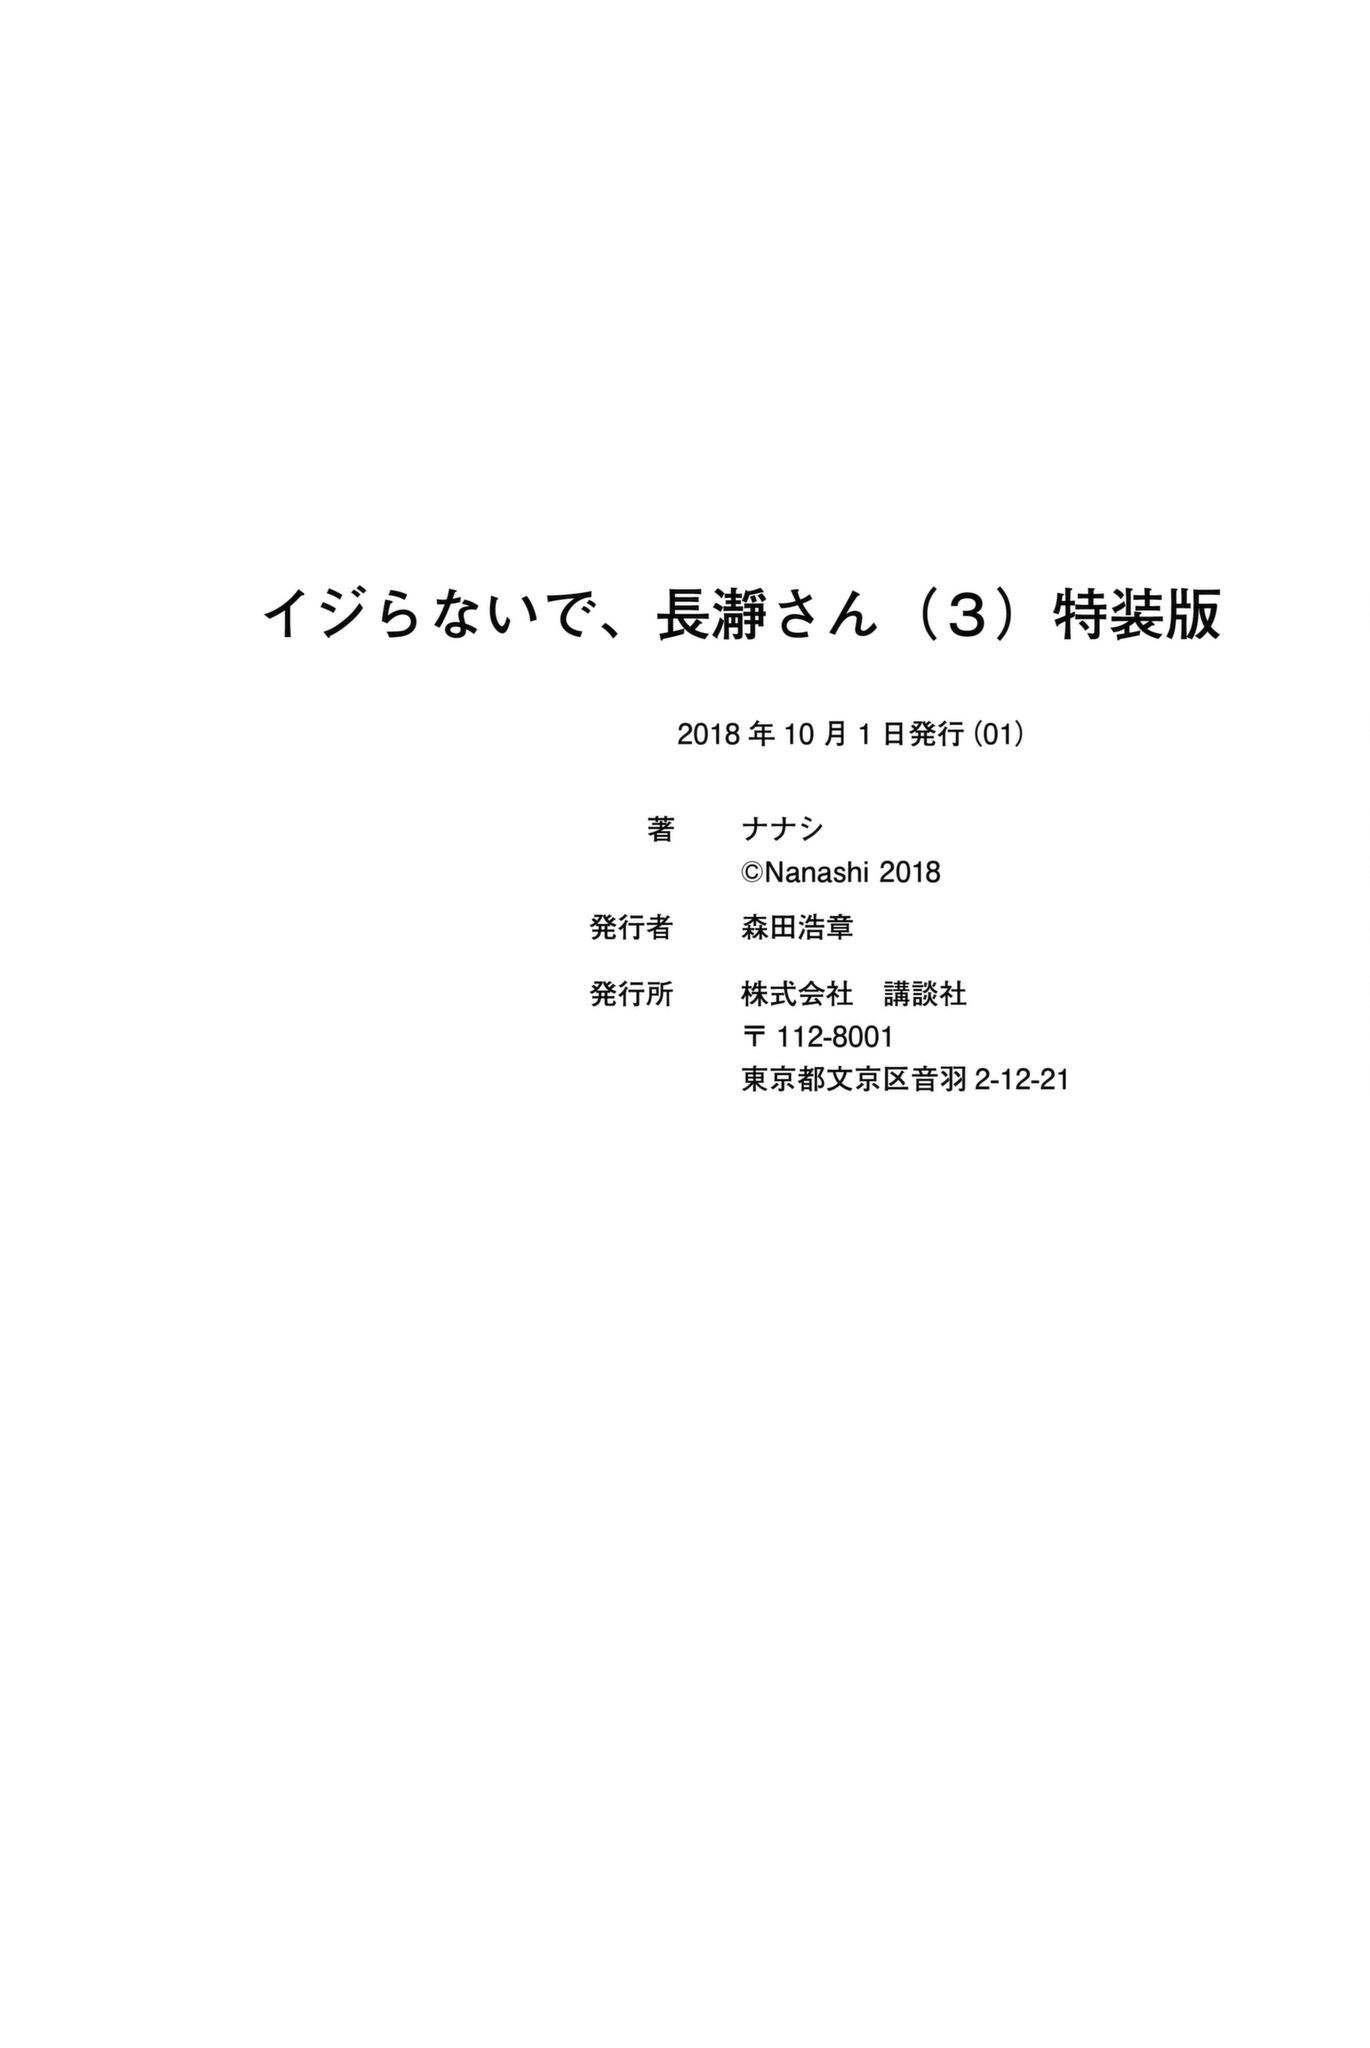 Ijiranaide, Nagatoro-san Comic Anthology Chapter Oneshot - MyToon.net